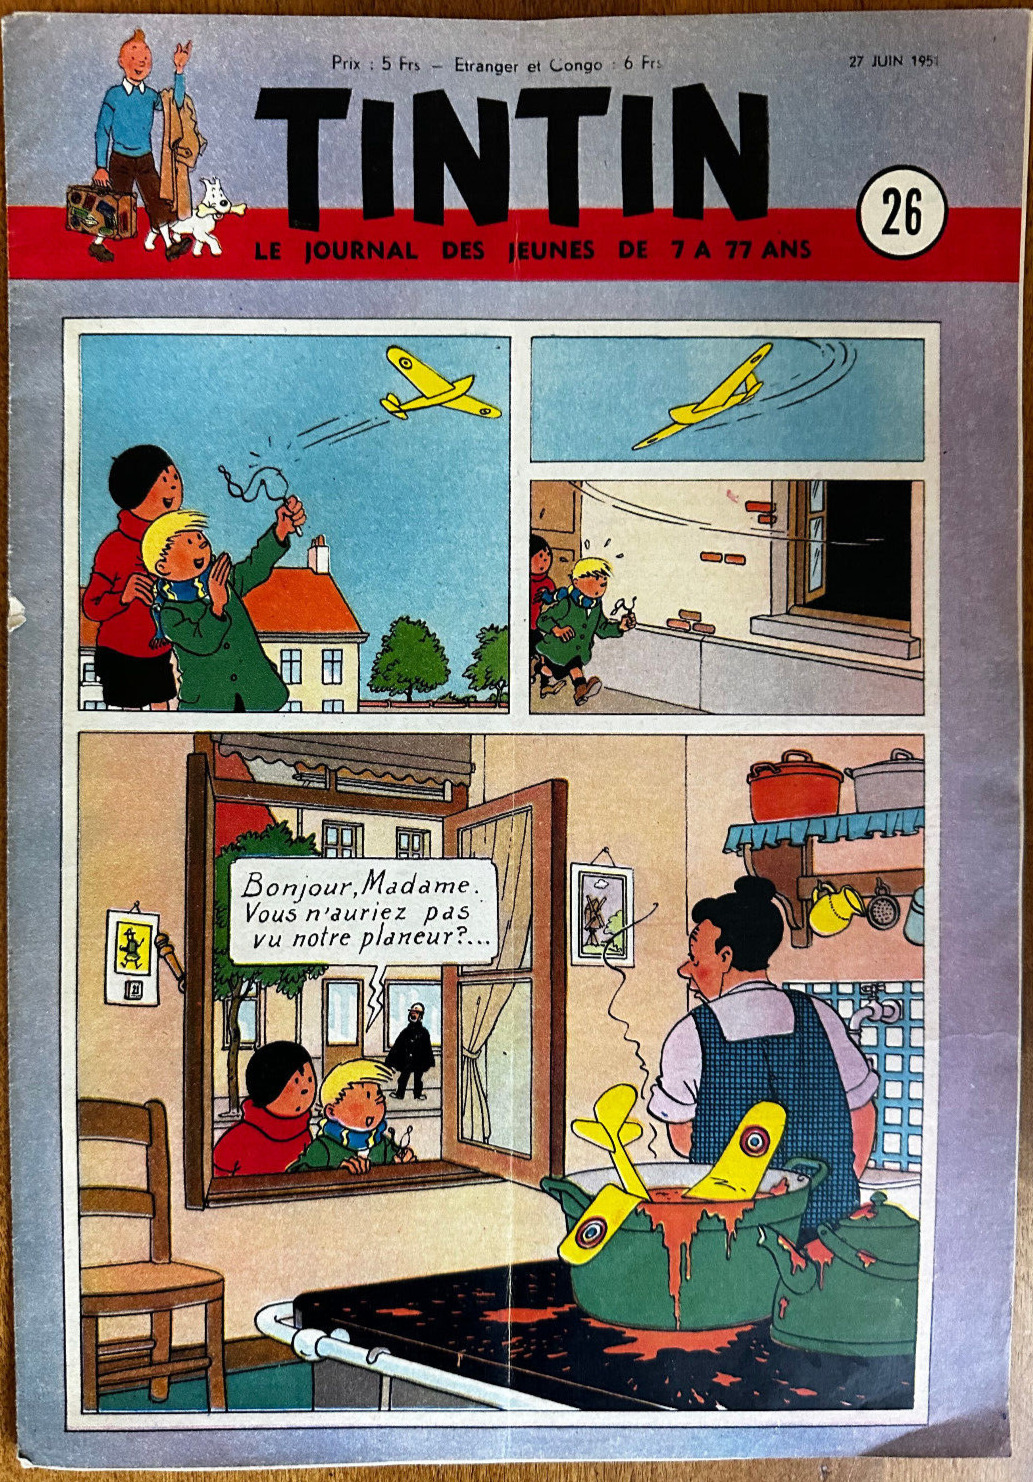 Le Journal de Tintin #26 27 June, 1951 Quick & Flupke Blake & Mortimer